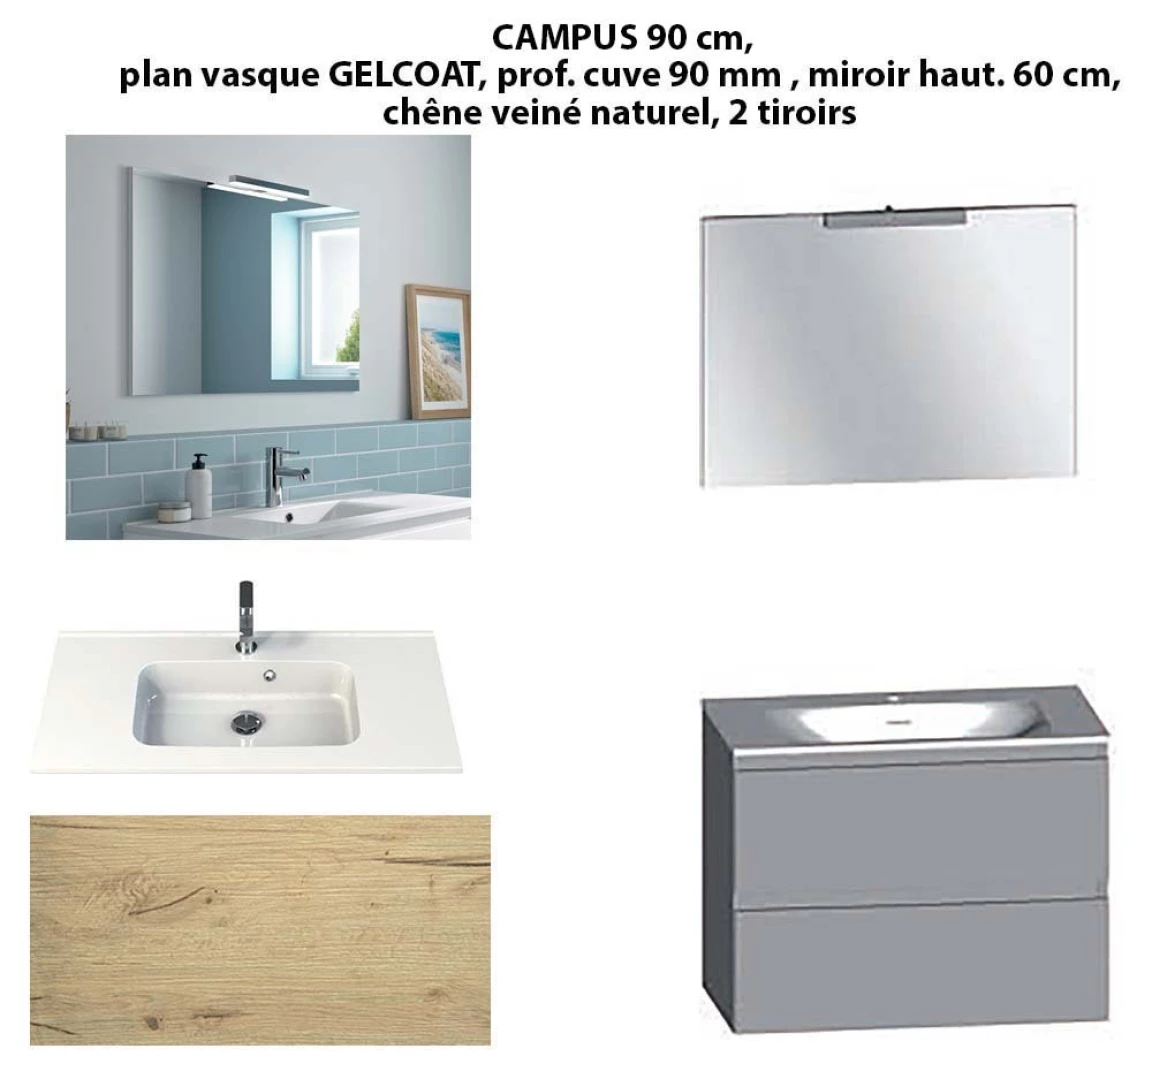 Ensemble meuble de salle de bain CAMPUS 90 cm, plan vasque GELCOAT, prof. cuve 90 mm, miroir hauteur 60 cm, chêne veiné naturel, 2 tiroirs